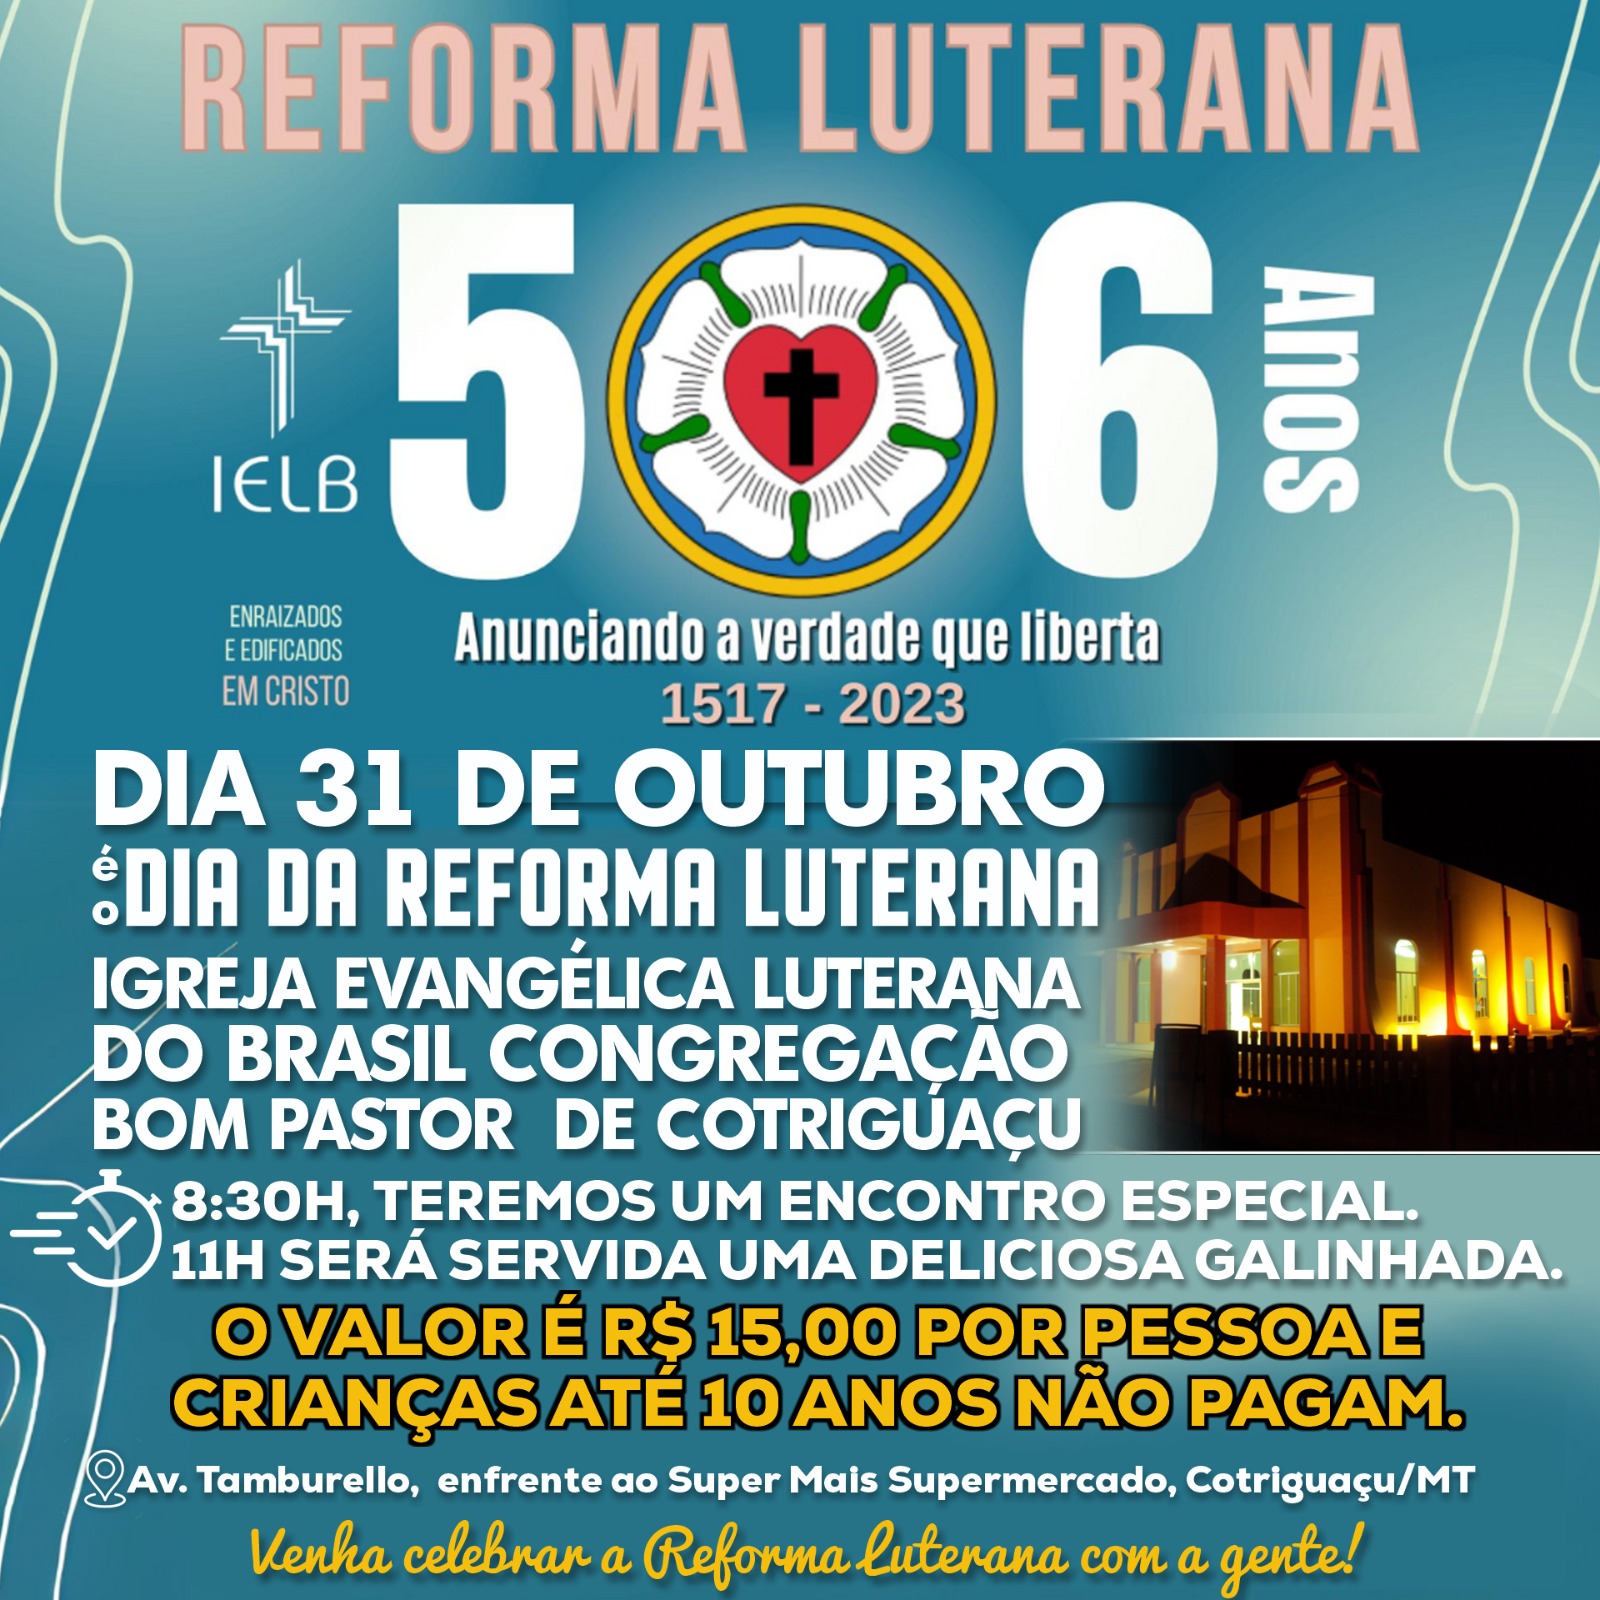 Igreja Evangélica Luterana do Brasil Congregação Bom Pastor promove evento para celebrar a Reforma Luterana